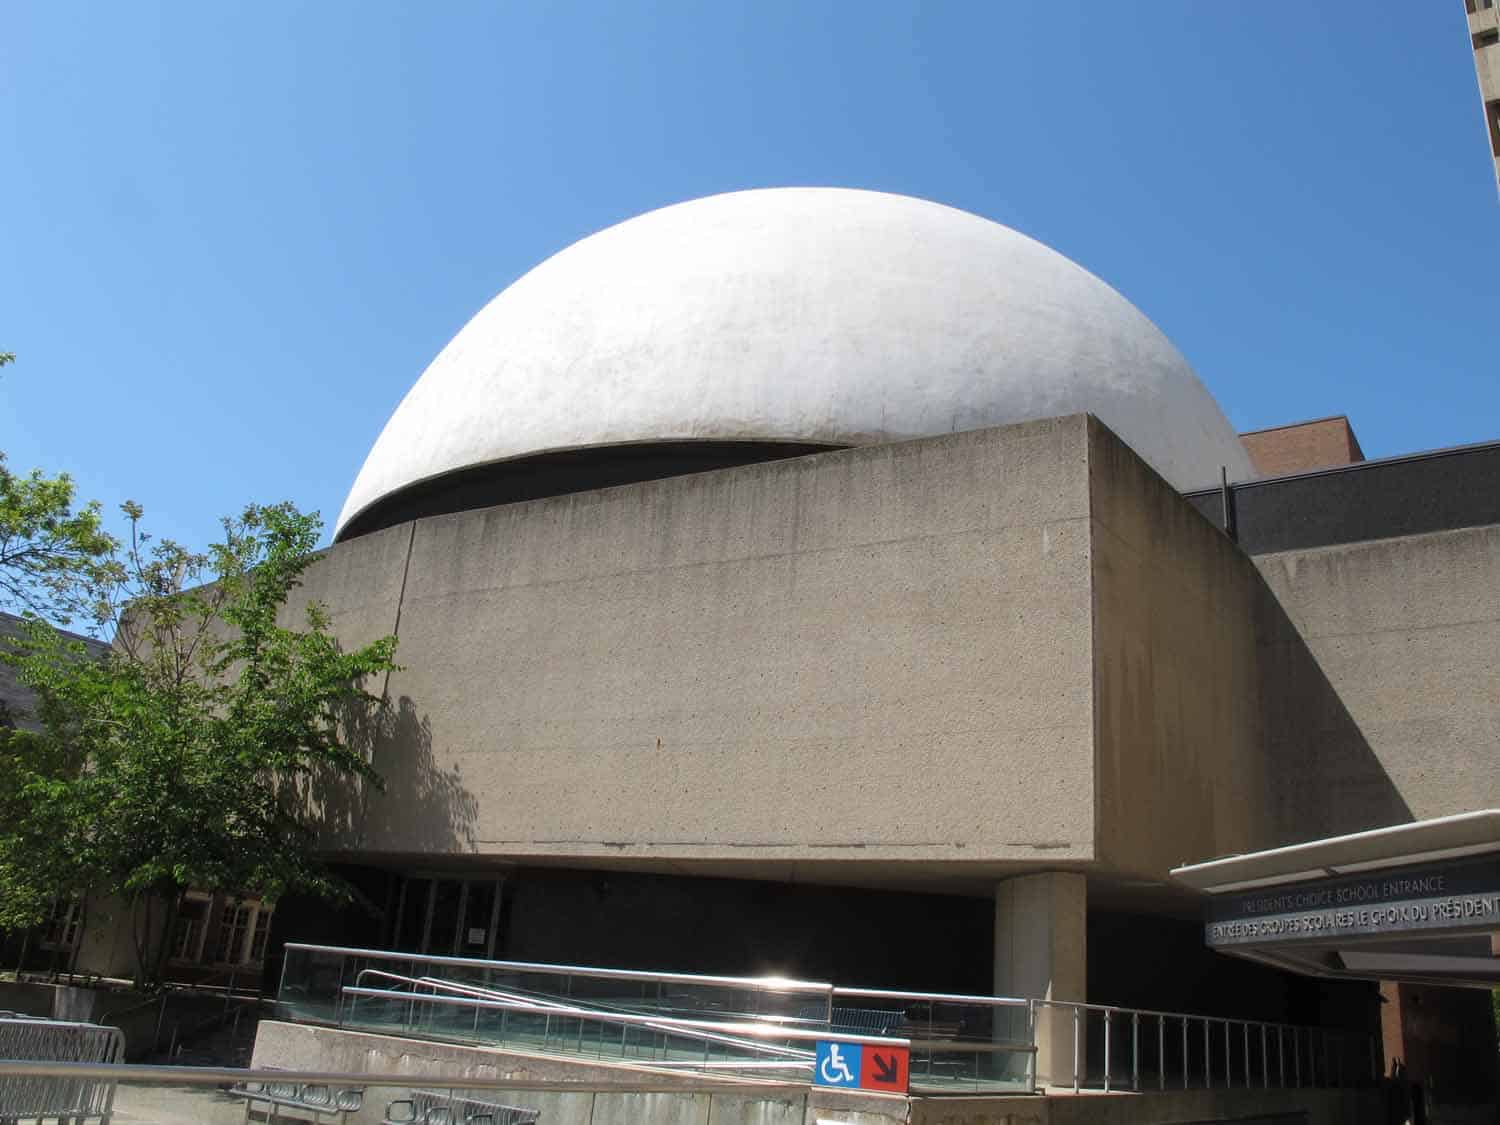 McLaughlin Planetarium